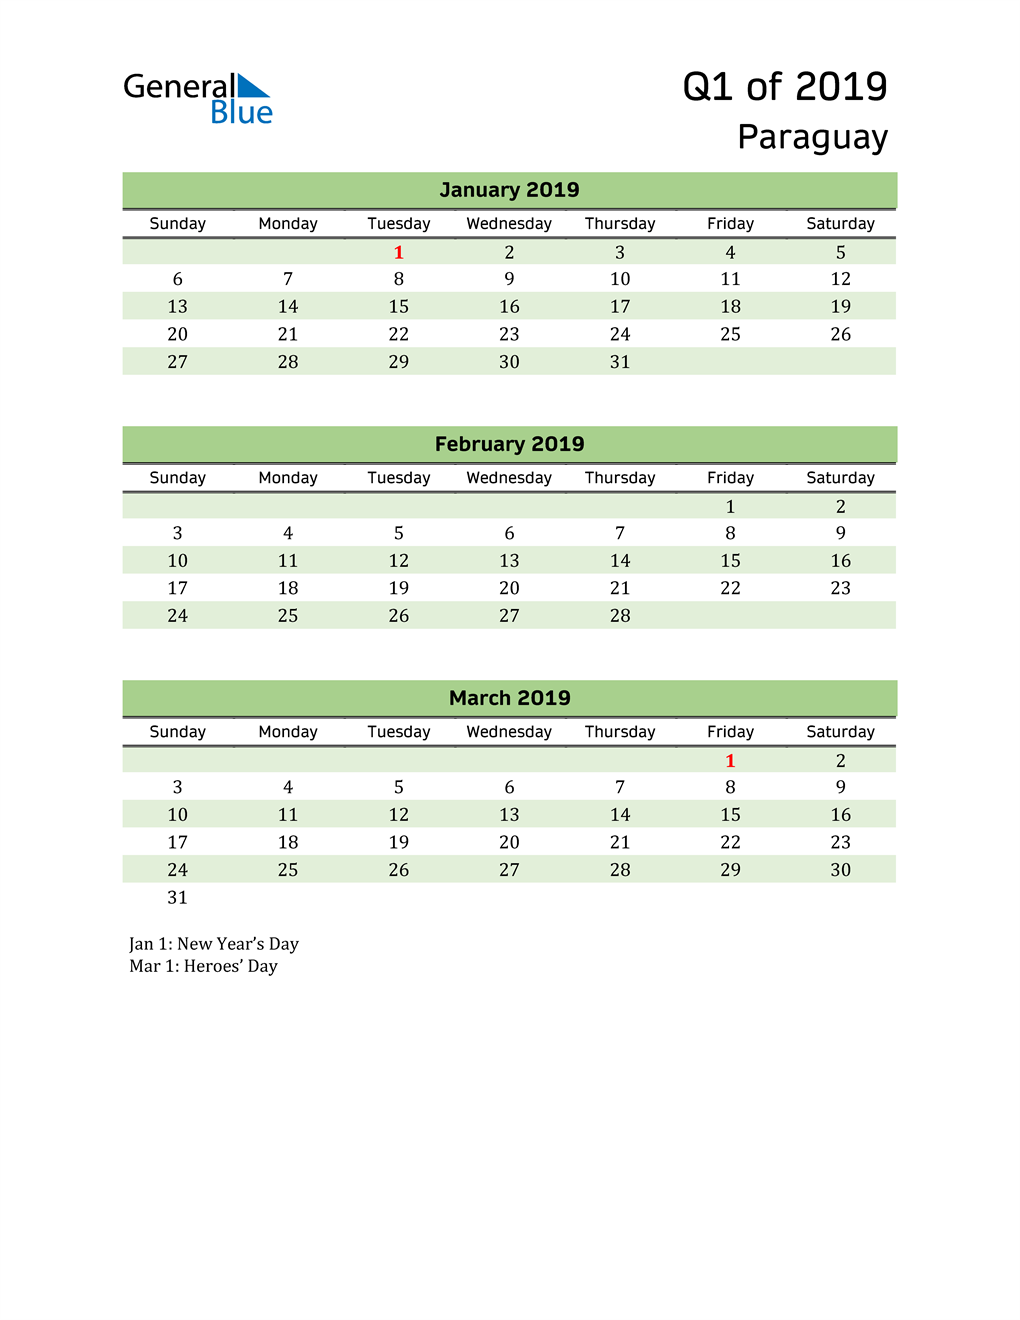  Quarterly Calendar 2019 with Paraguay Holidays 